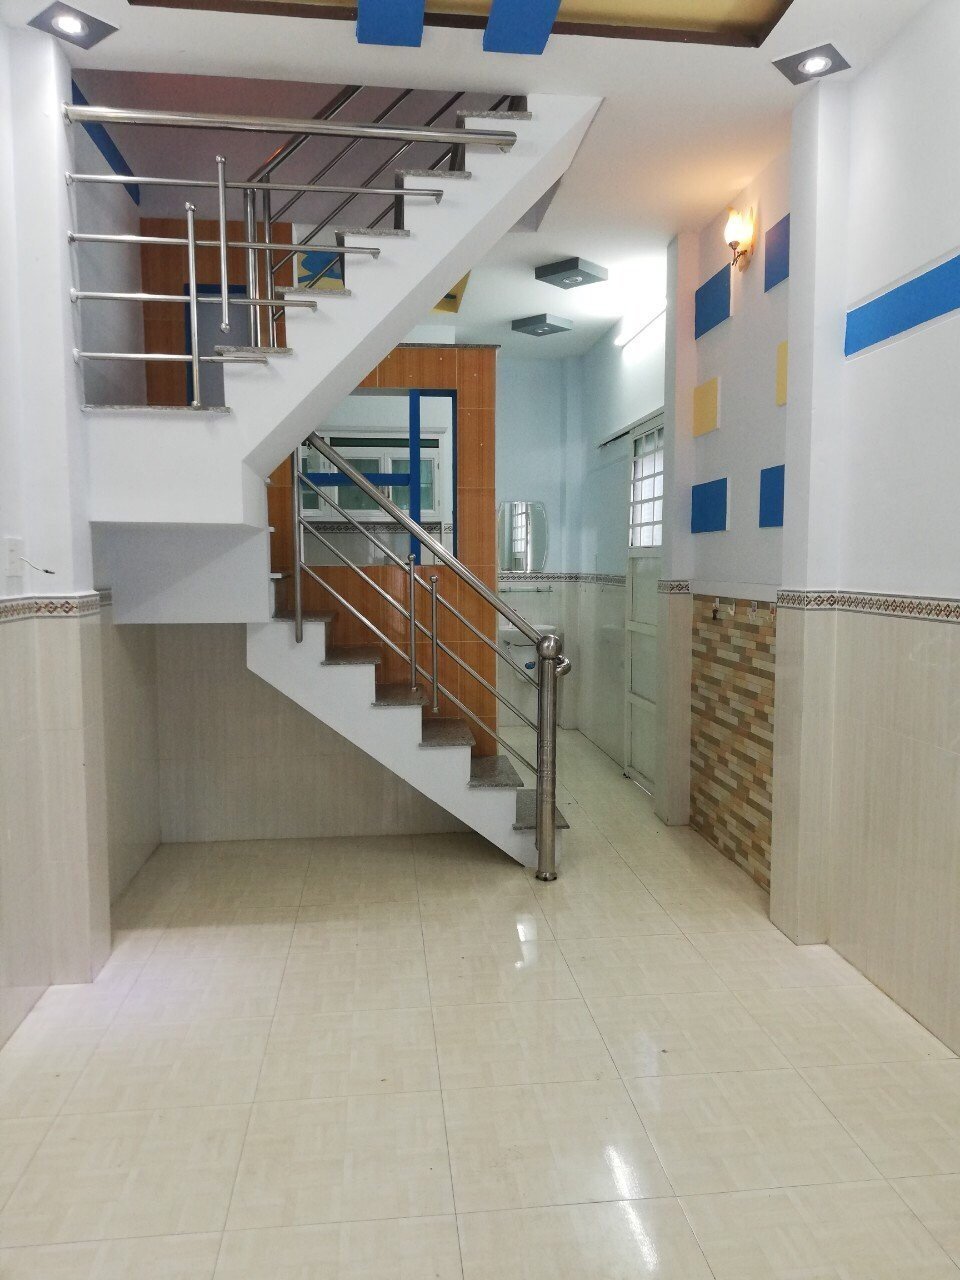 Nhà phố Quận 12 1 trệt 2 lầu 3 phòng ngủ, sau MM Hiệp Phú, gần bệnh viện Q12